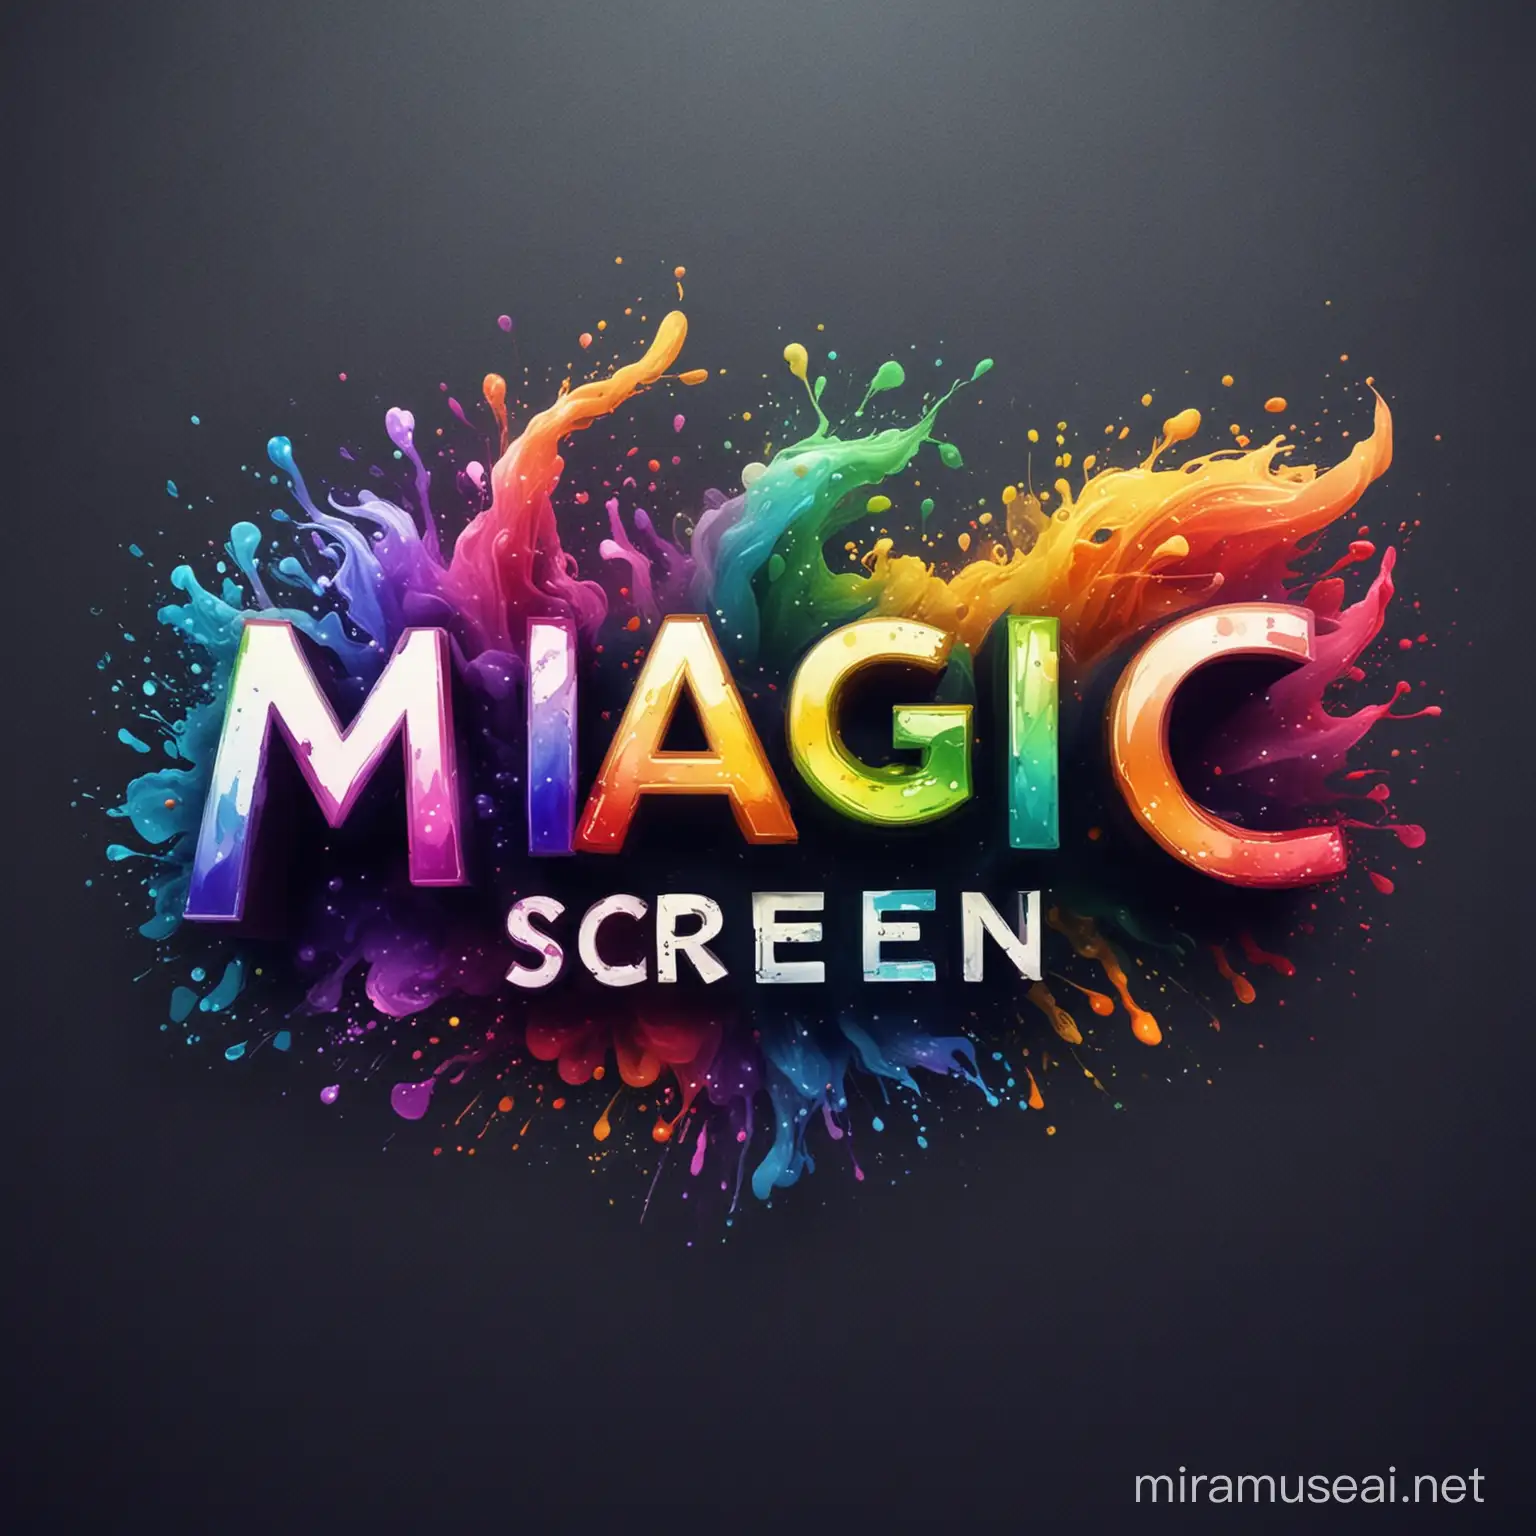 لوگو میخوام با موضوع رنگ ها و تا جایی میتونی توش خلاقیتی از رنگ ها به کار ببر که کلی رنگی رنگی باشه، این لوگو قراره برای کانالی به اسم magic screen  استفاده بشه
